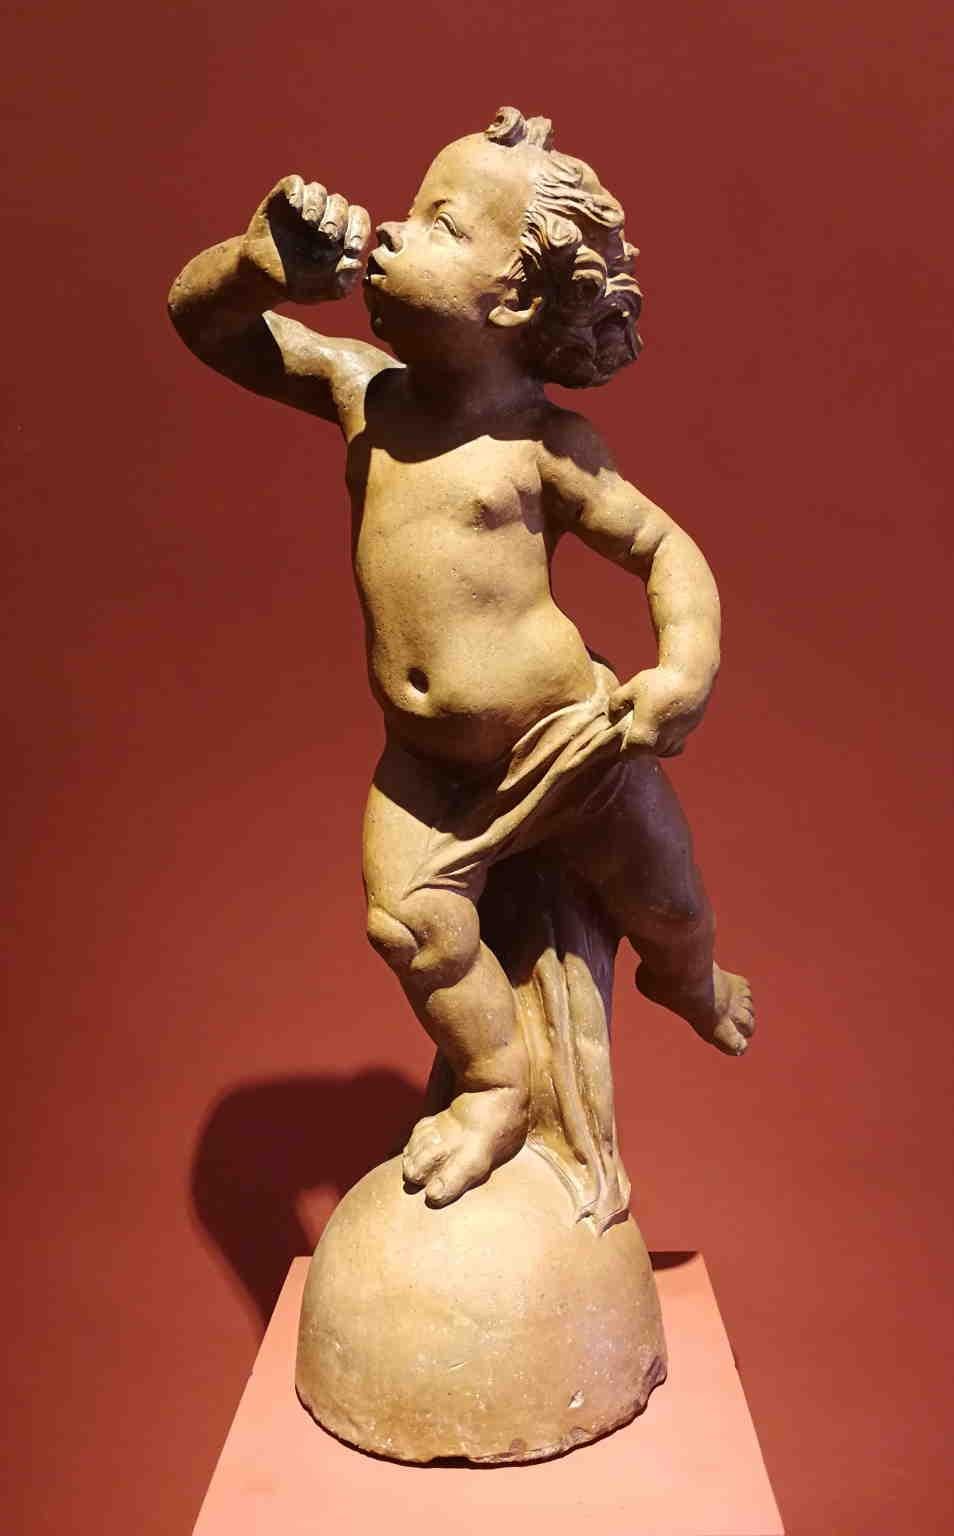 Unknown Figurative Sculpture - Florentine artist After Verrocchio Terracotta Putto Fountain 17 century